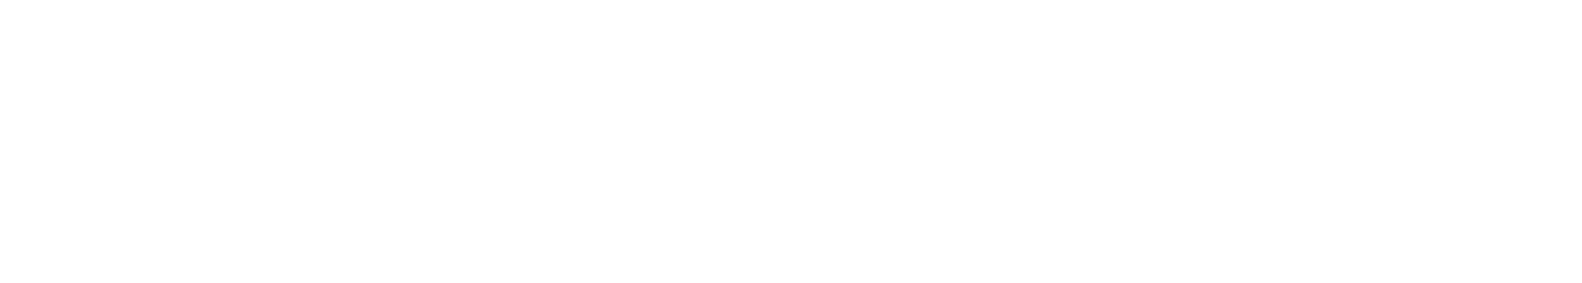 Schroders logo grand pour les fonds sombres (PNG transparent)